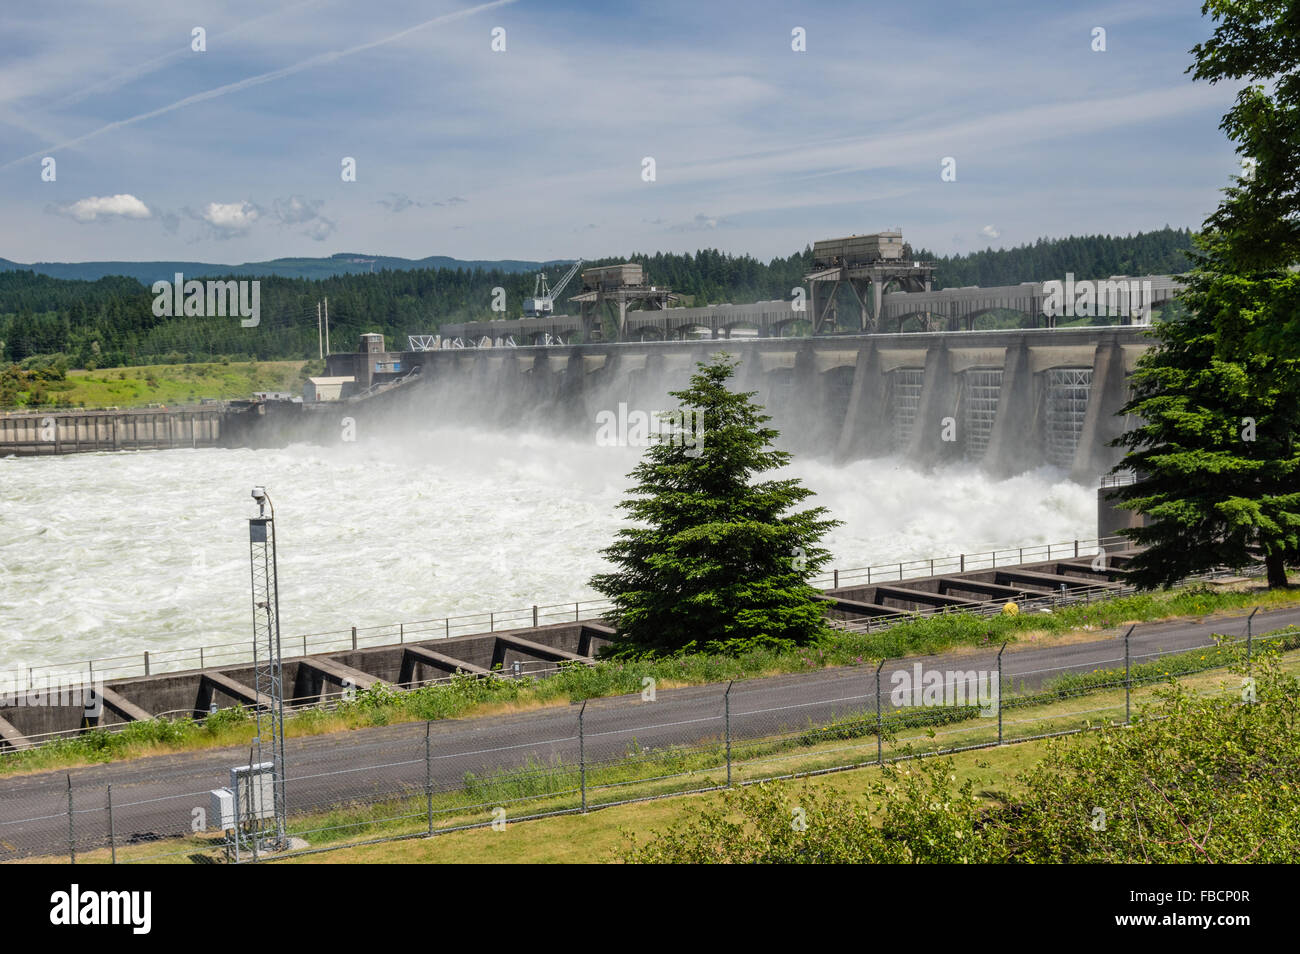 Wasser aus den Toren am Bonneville Dam Wasserkraftwerk entlassen wurden.  Cascade Locks, Oregon, USA Stockfoto